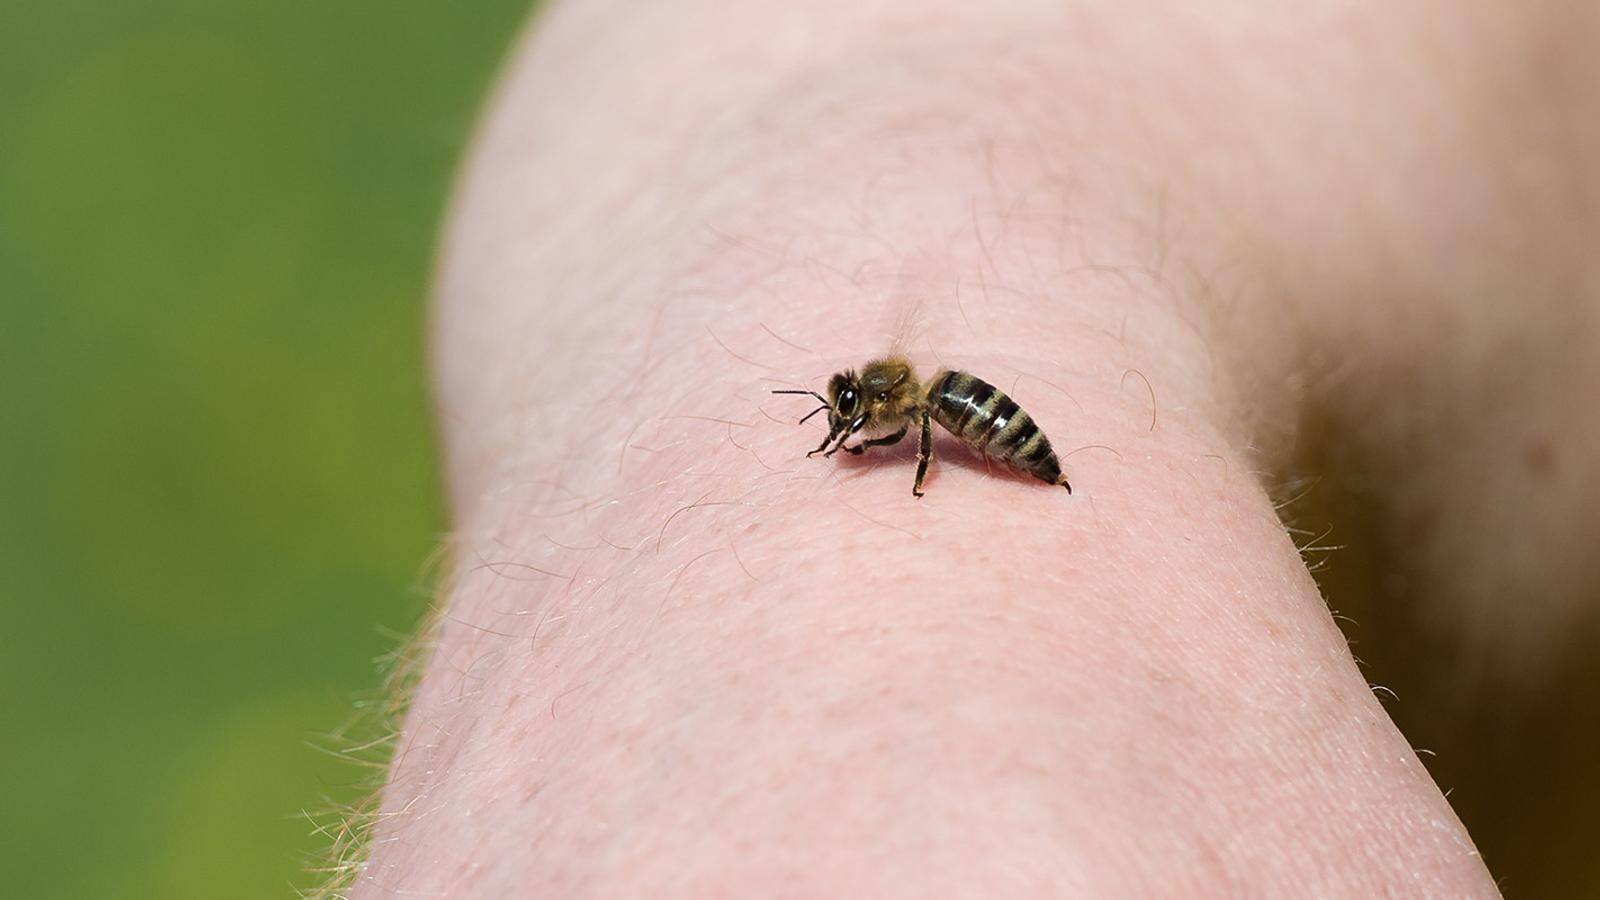 Hausmittel gegen juckende Bienenstiche